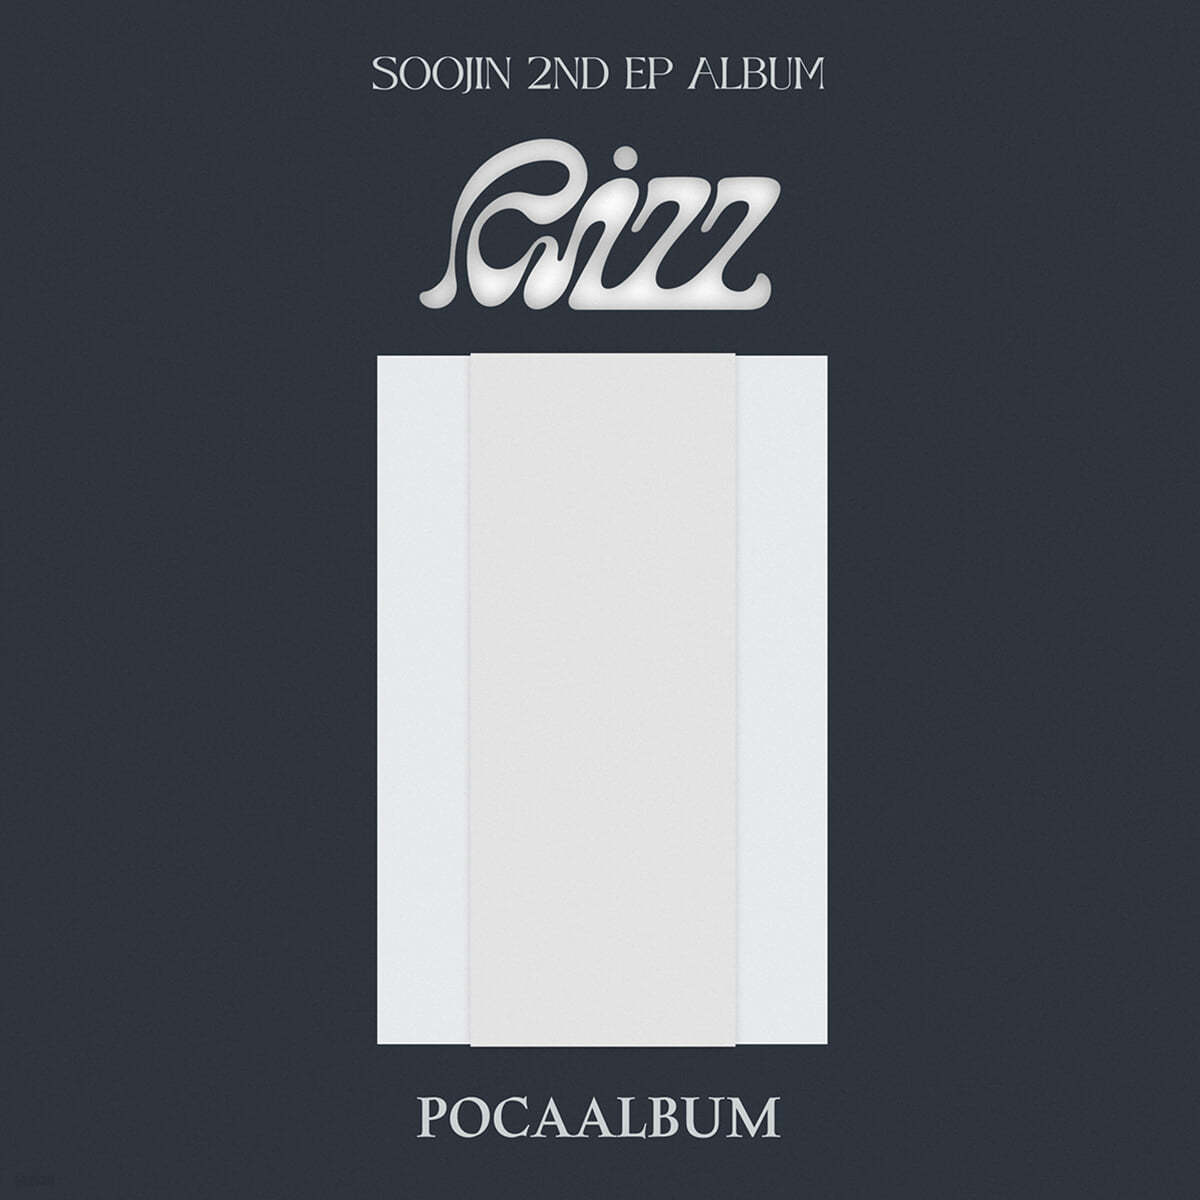 수진 (SOOJIN) - 2nd EP : RIZZ [POCAALBUM]